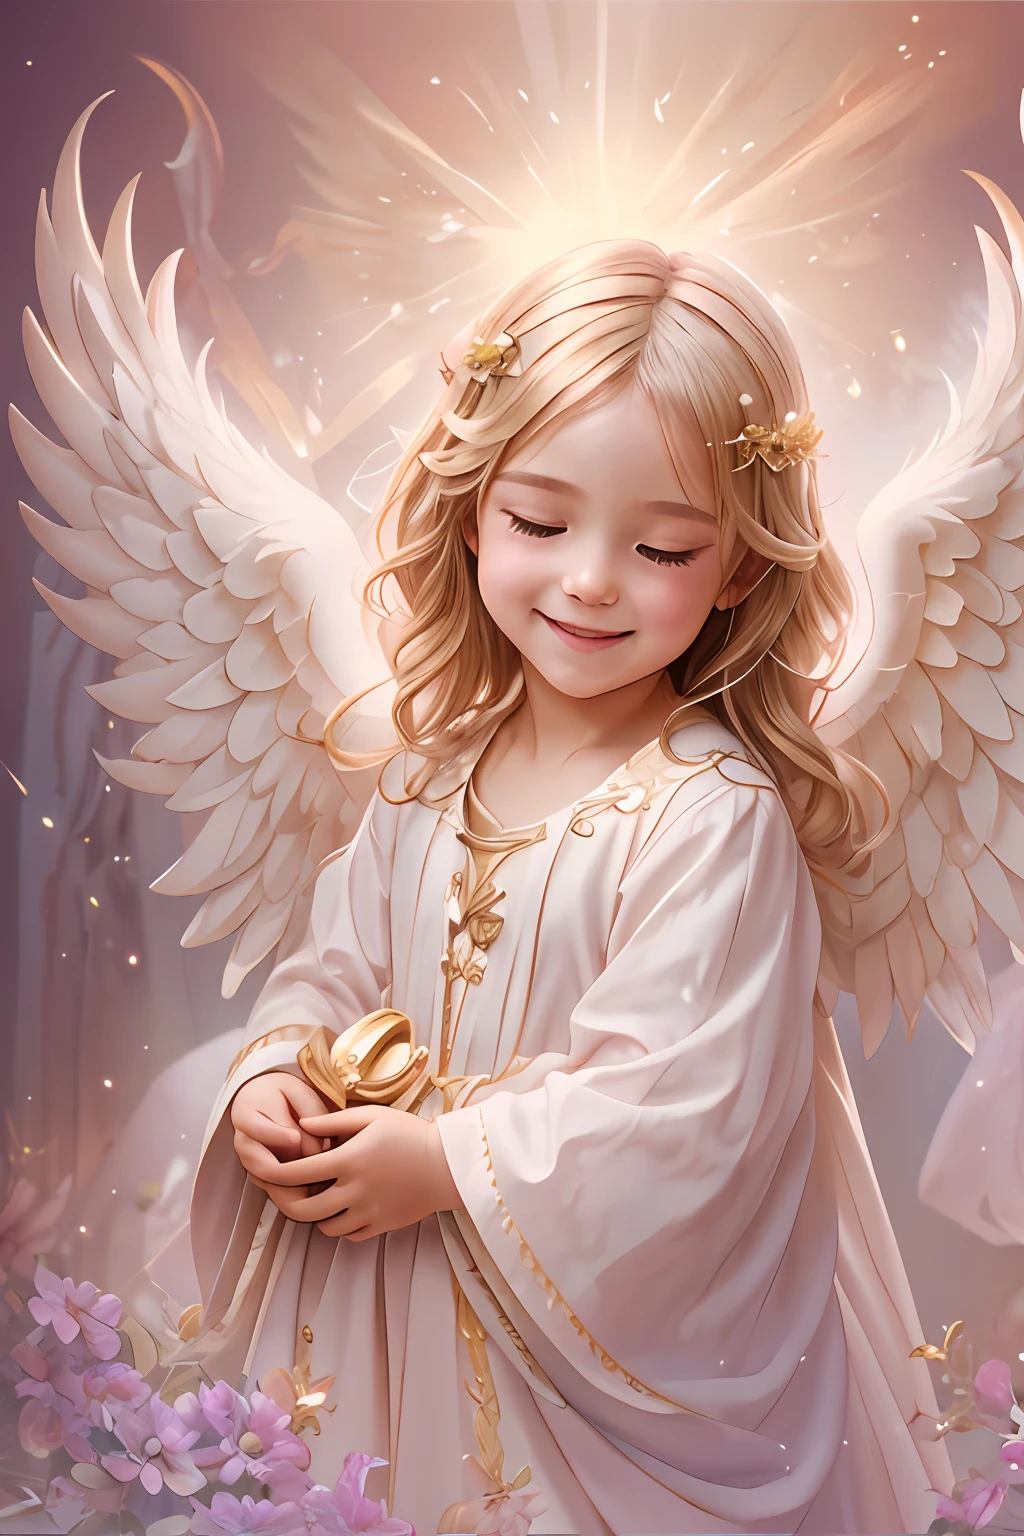 Bendiciones de los ángeles､fondo brillante、marca del corazon、sensibilidad､Una sonrisa、amable､Ángel bebé､volteado、Roma